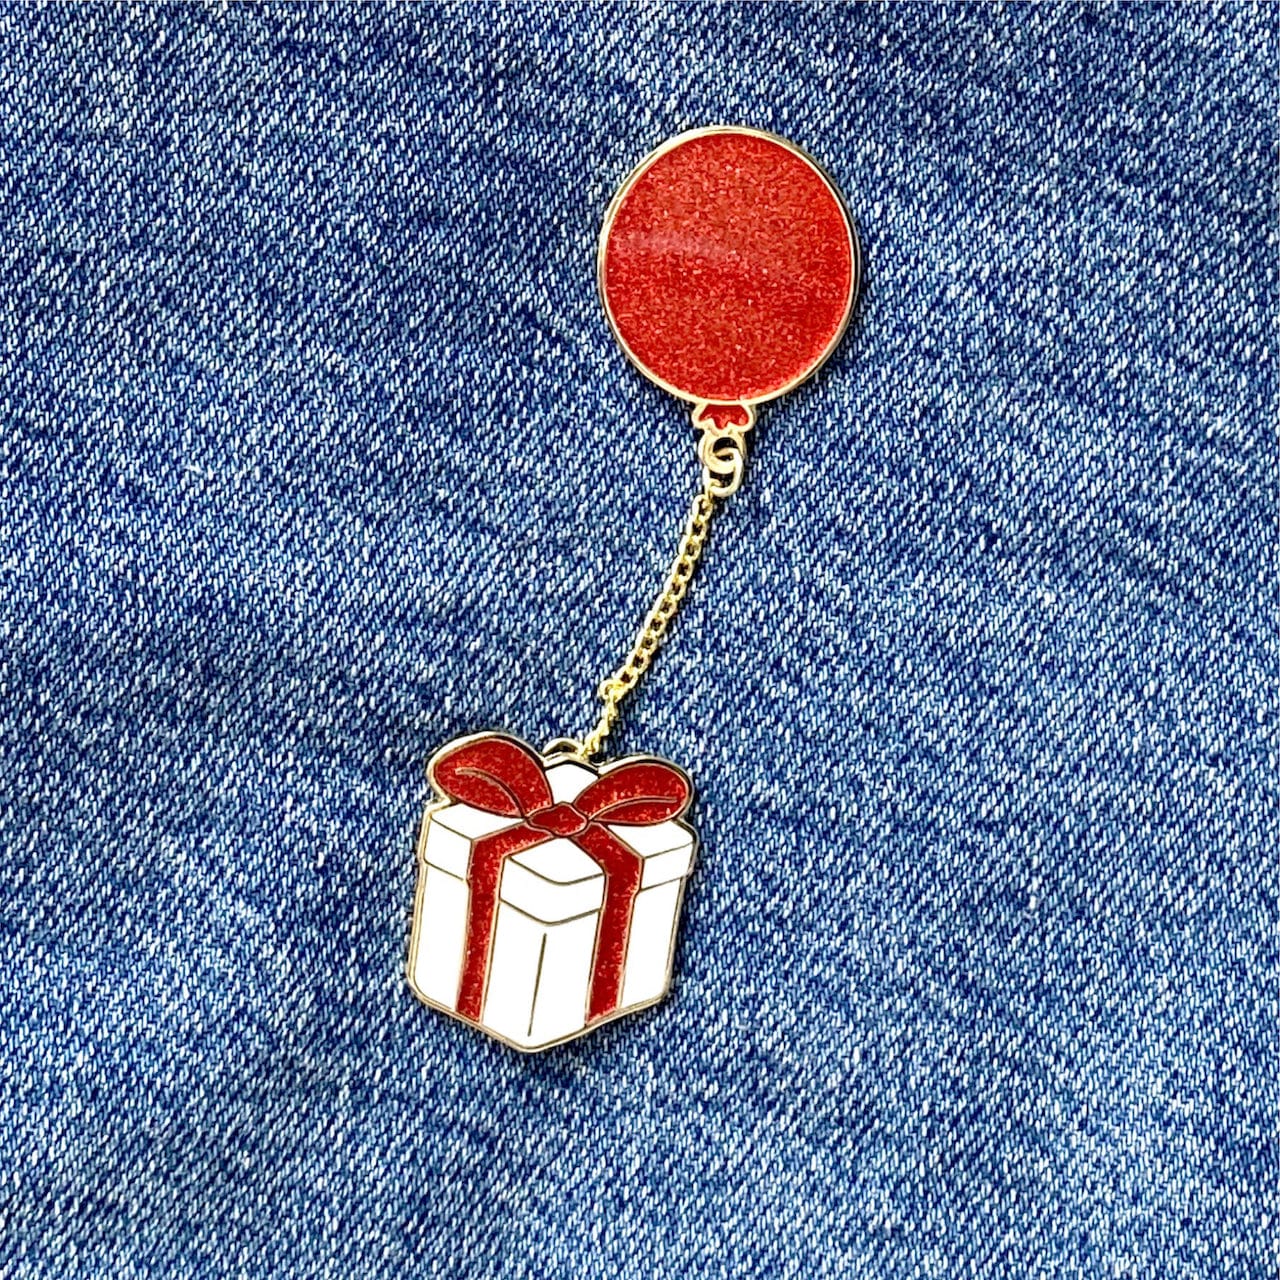 lemeownade Enamel pin Floating Gift Box Pin